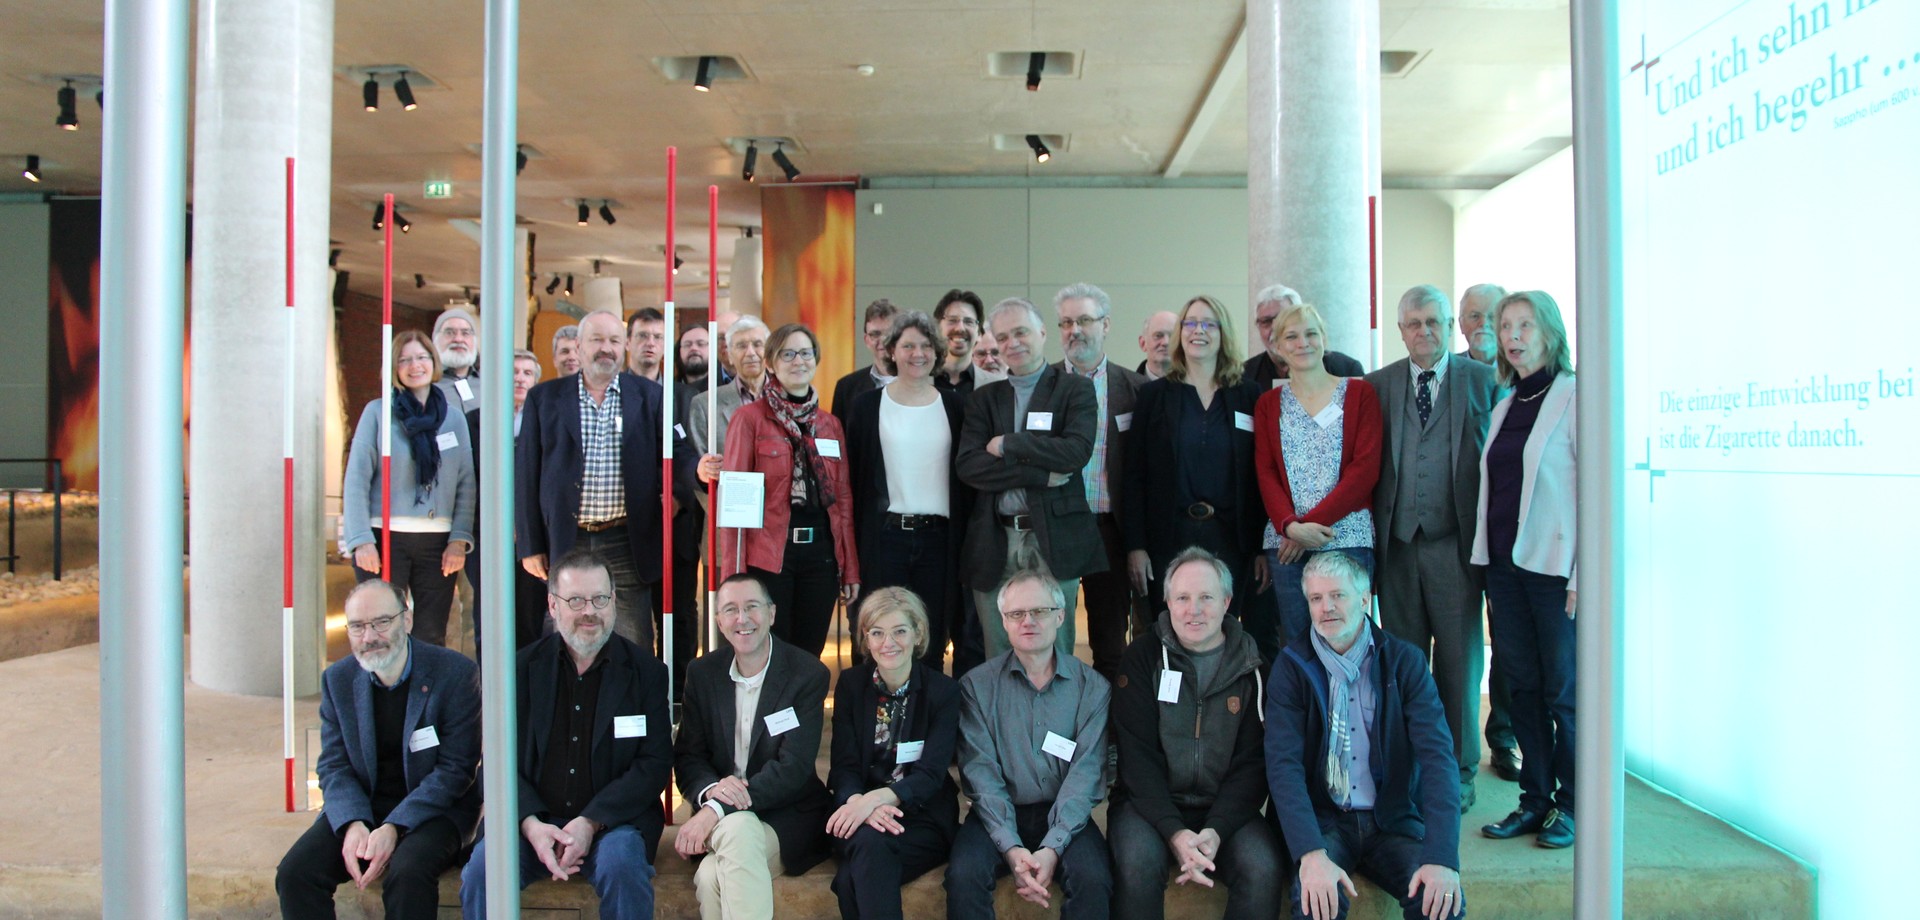 Mitglieder der Altertumskommission bei der Jahreshauptversammlung 2019 (Foto: Altertumskommission).